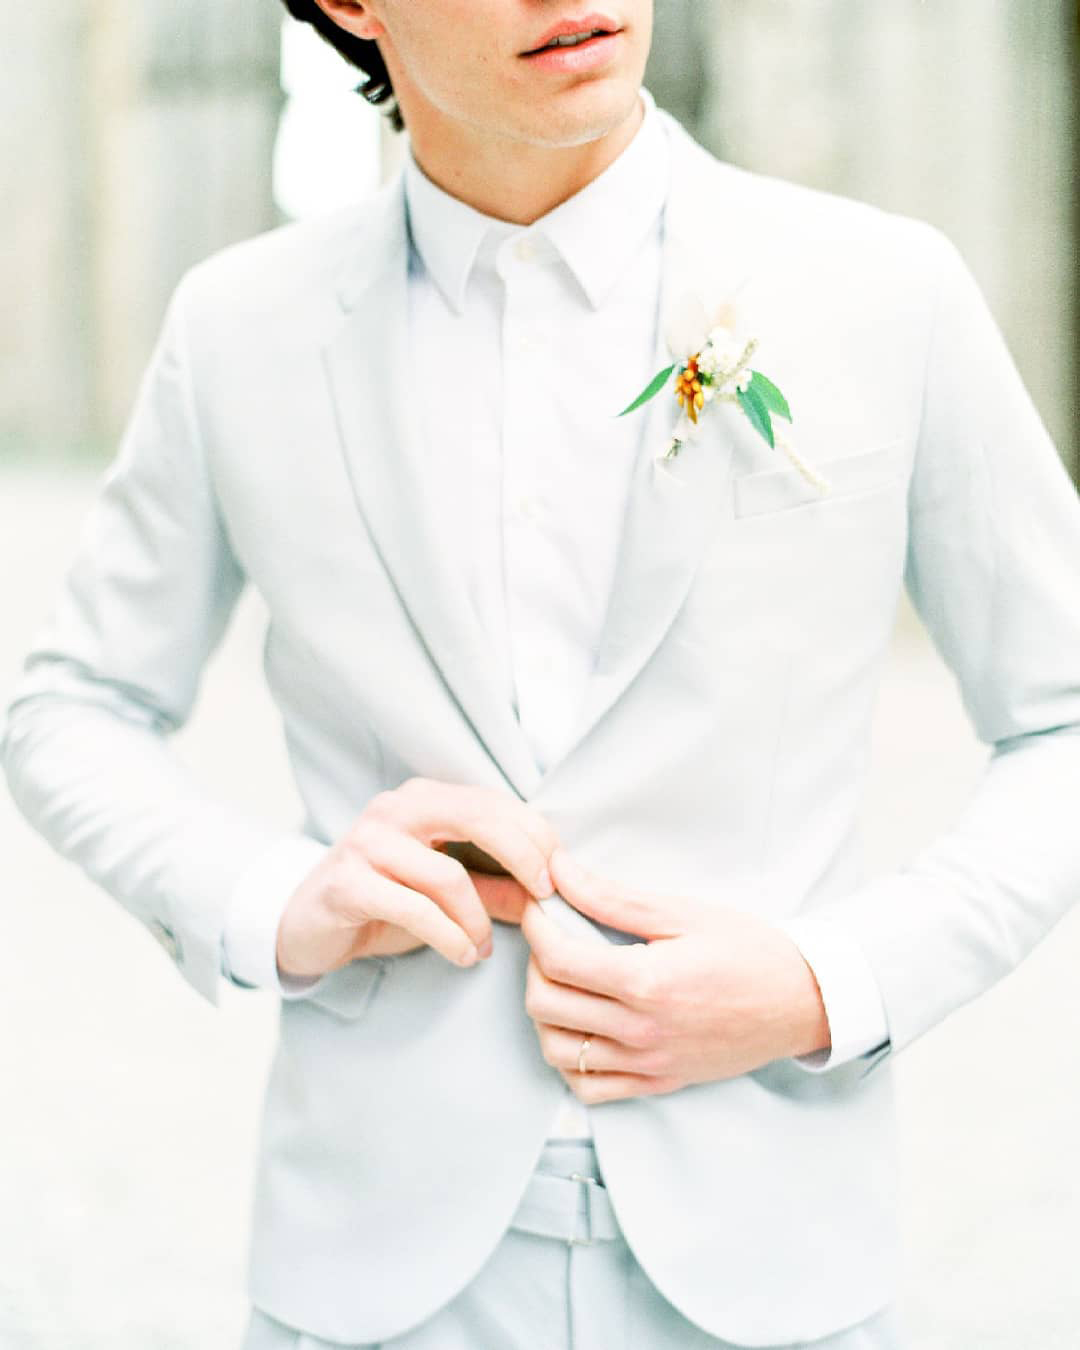 groomsmen attire white jacket with tie bouttoniere linneo eu